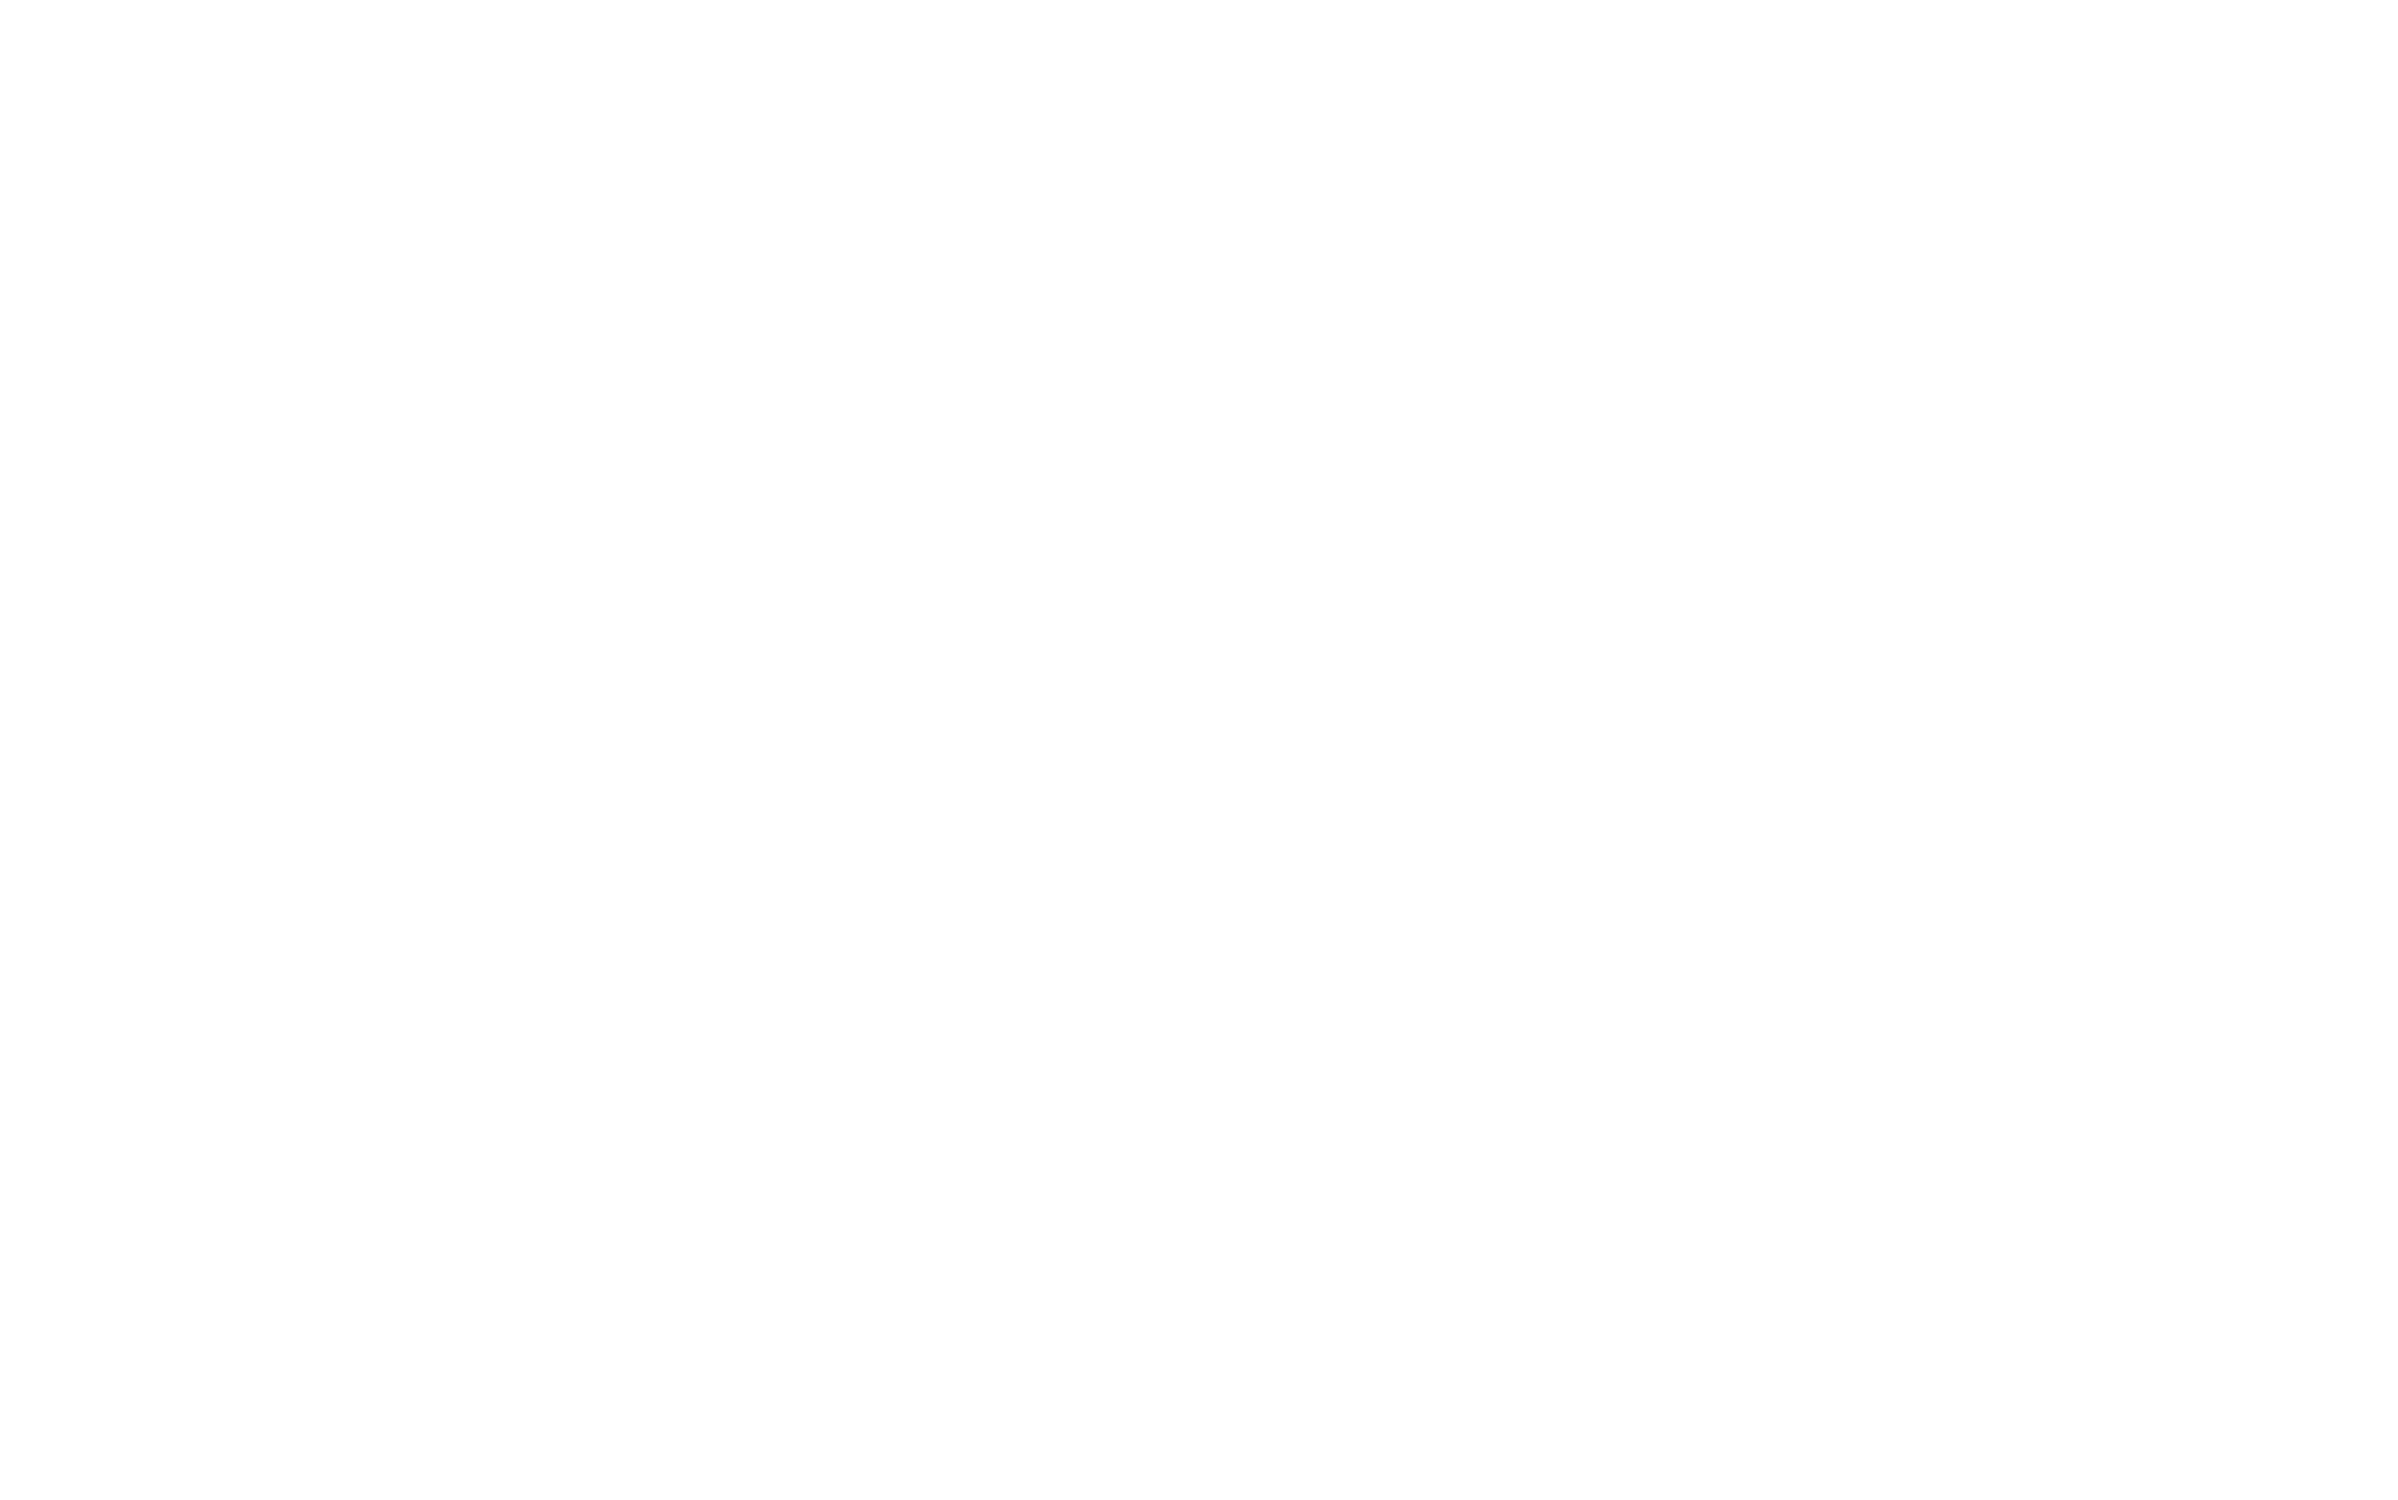 Casualties Union